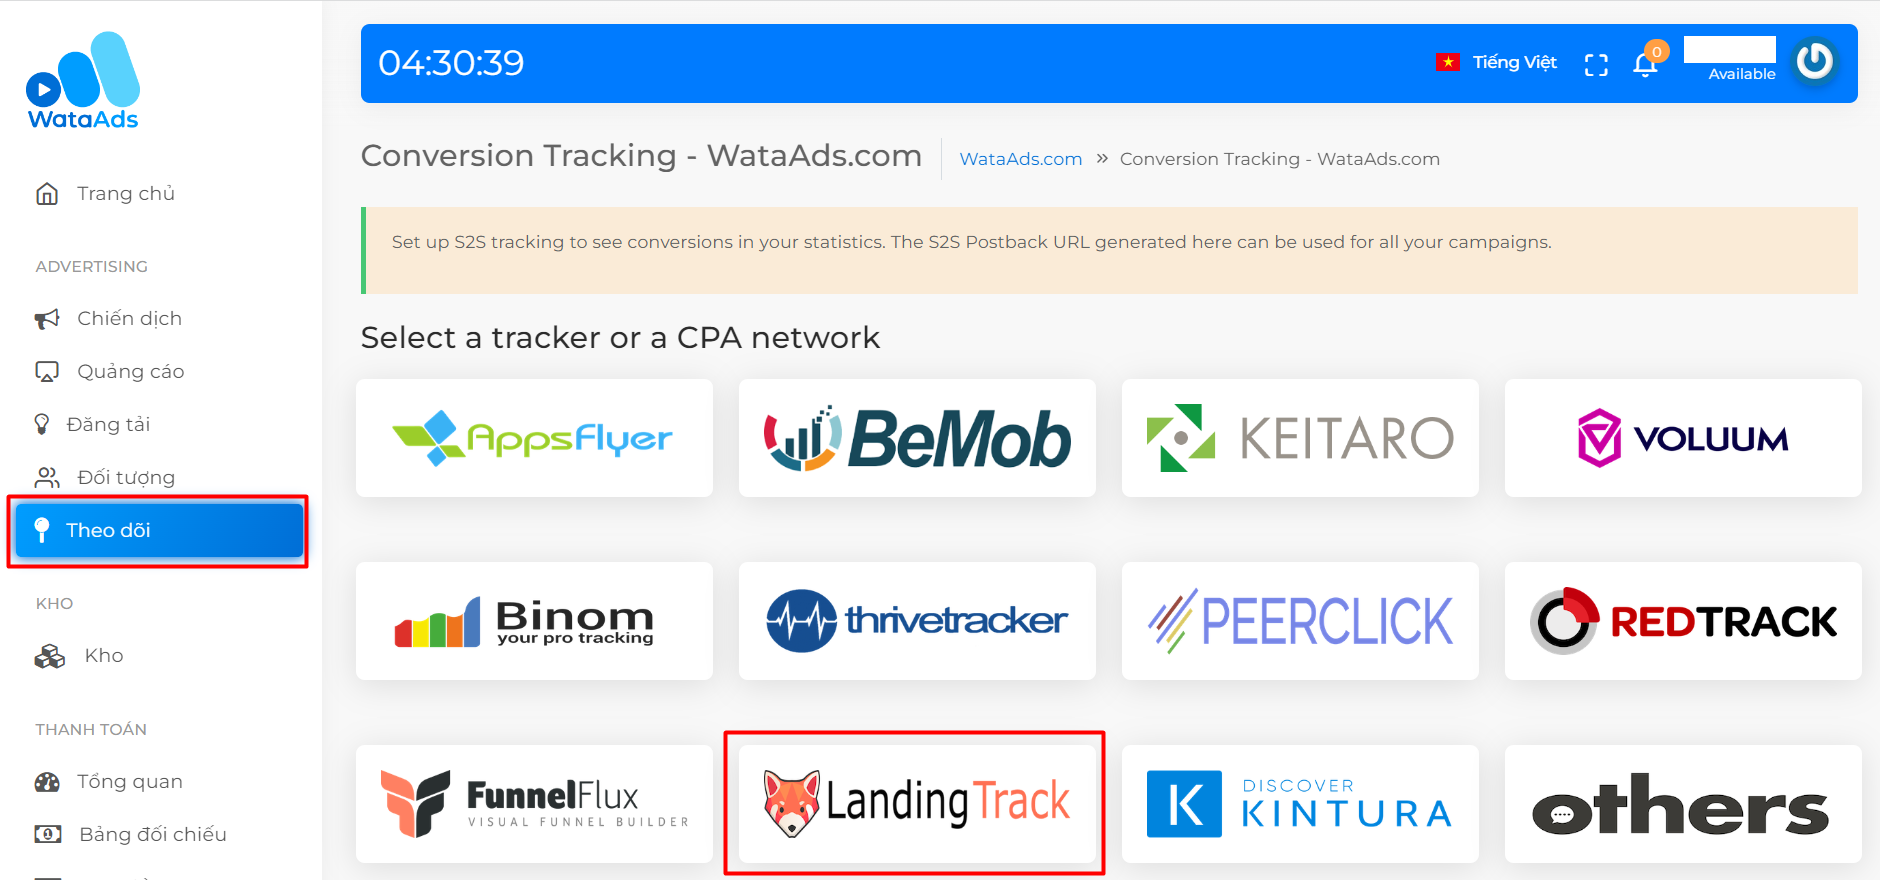 Giao diện chọn công cụ tích hợp theo dõi chuyển đổi với Landingtrack tại WataAds